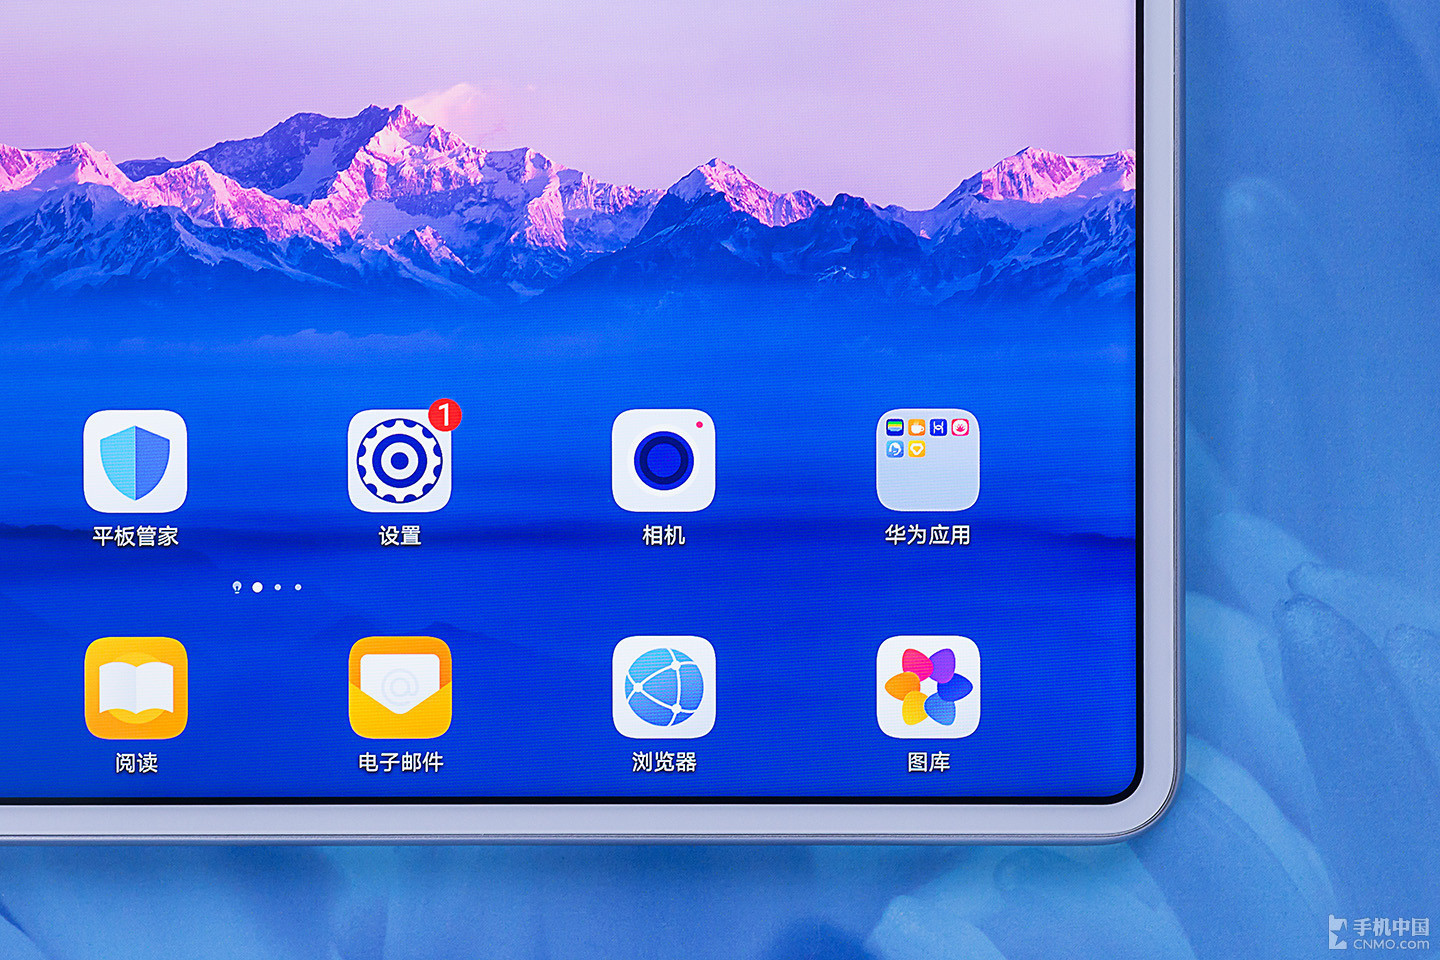 Huawei chính thức ra mắt MatePad Pro: Tablet với
màn hình đục lỗ, Kirin 990, chạy Android 10 nhưng không có
dịch vụ và ứng dụng Google